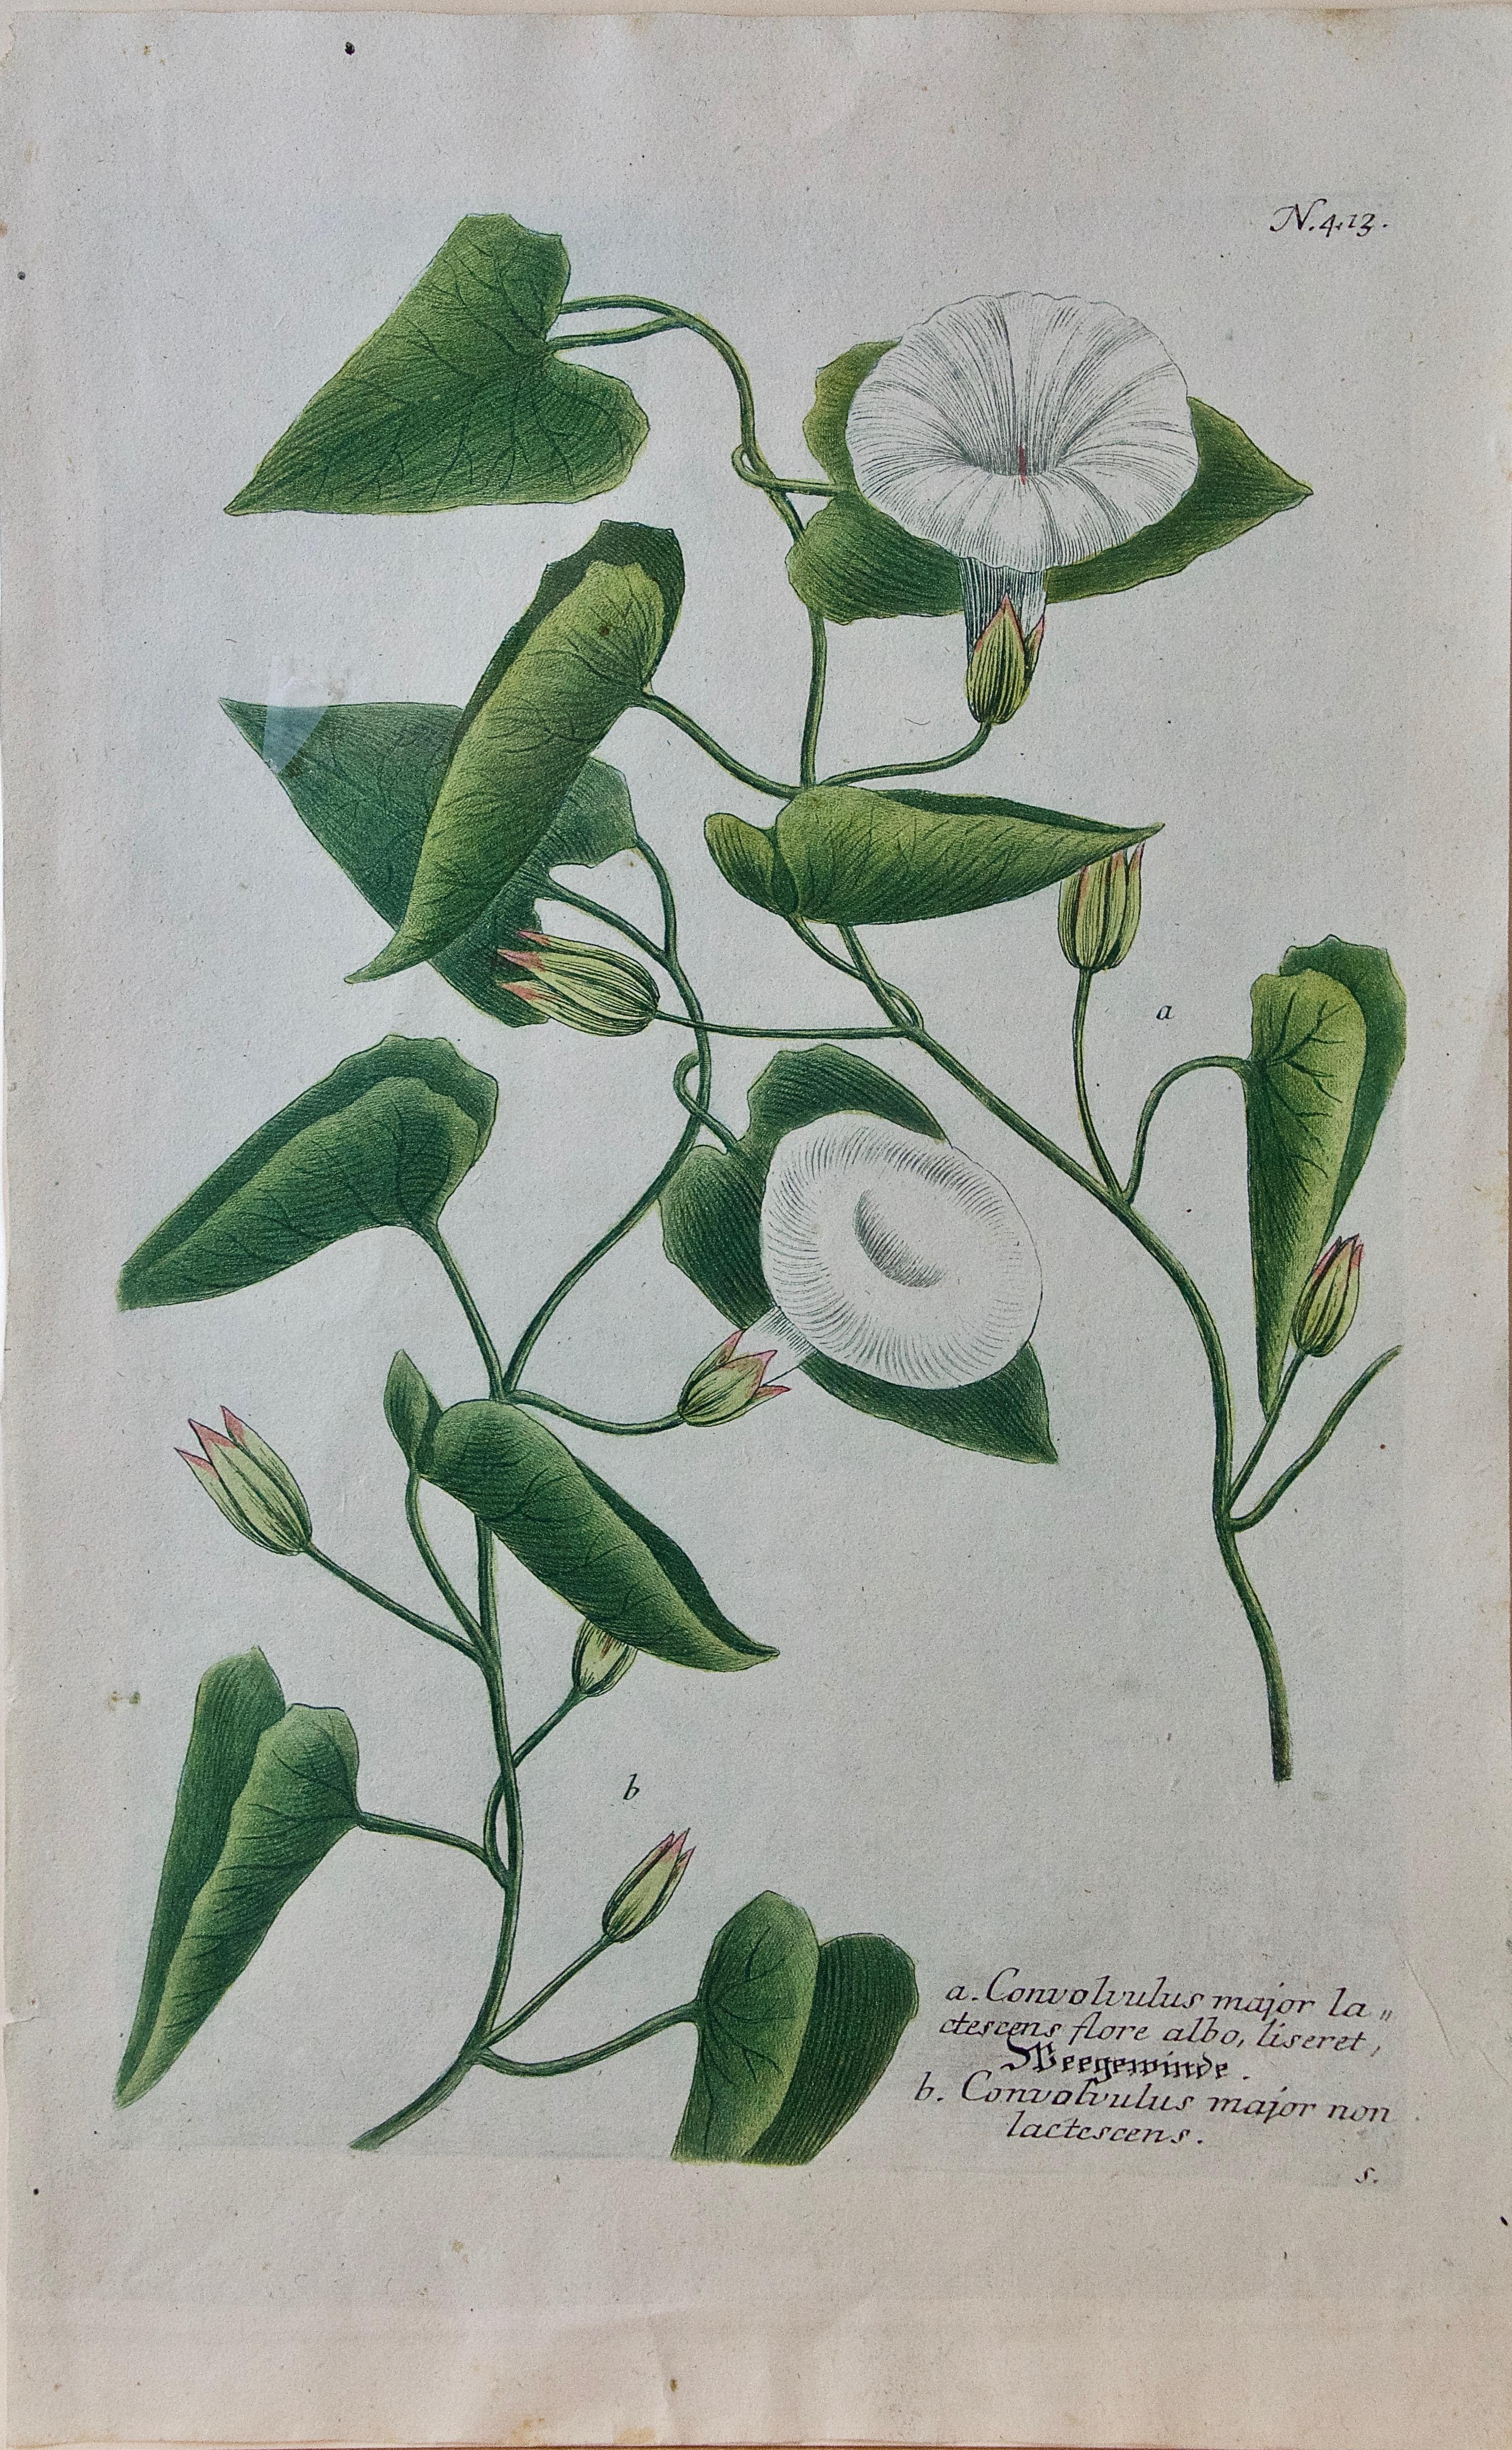 Gravure botanique du 18e siècle colorée à la main « Convolvulus » (Bindweed) de Weinmann